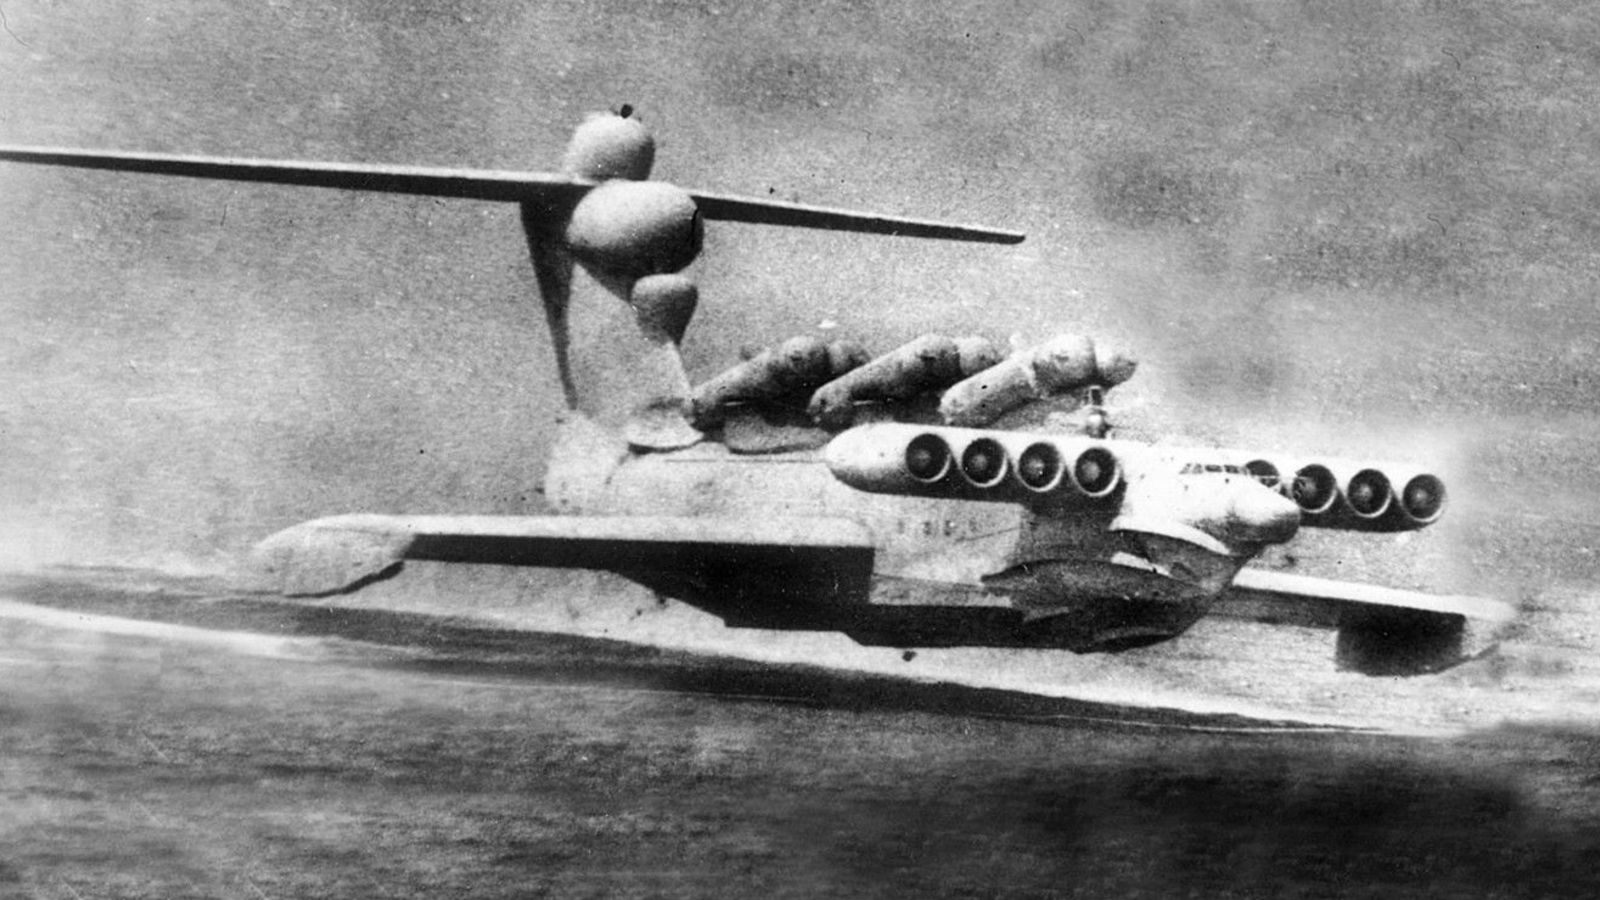 Lun ekranoplan - siêu tàu đệm khí của Liên Xô với 8 động cơ, 6 tên lửa trên lưng